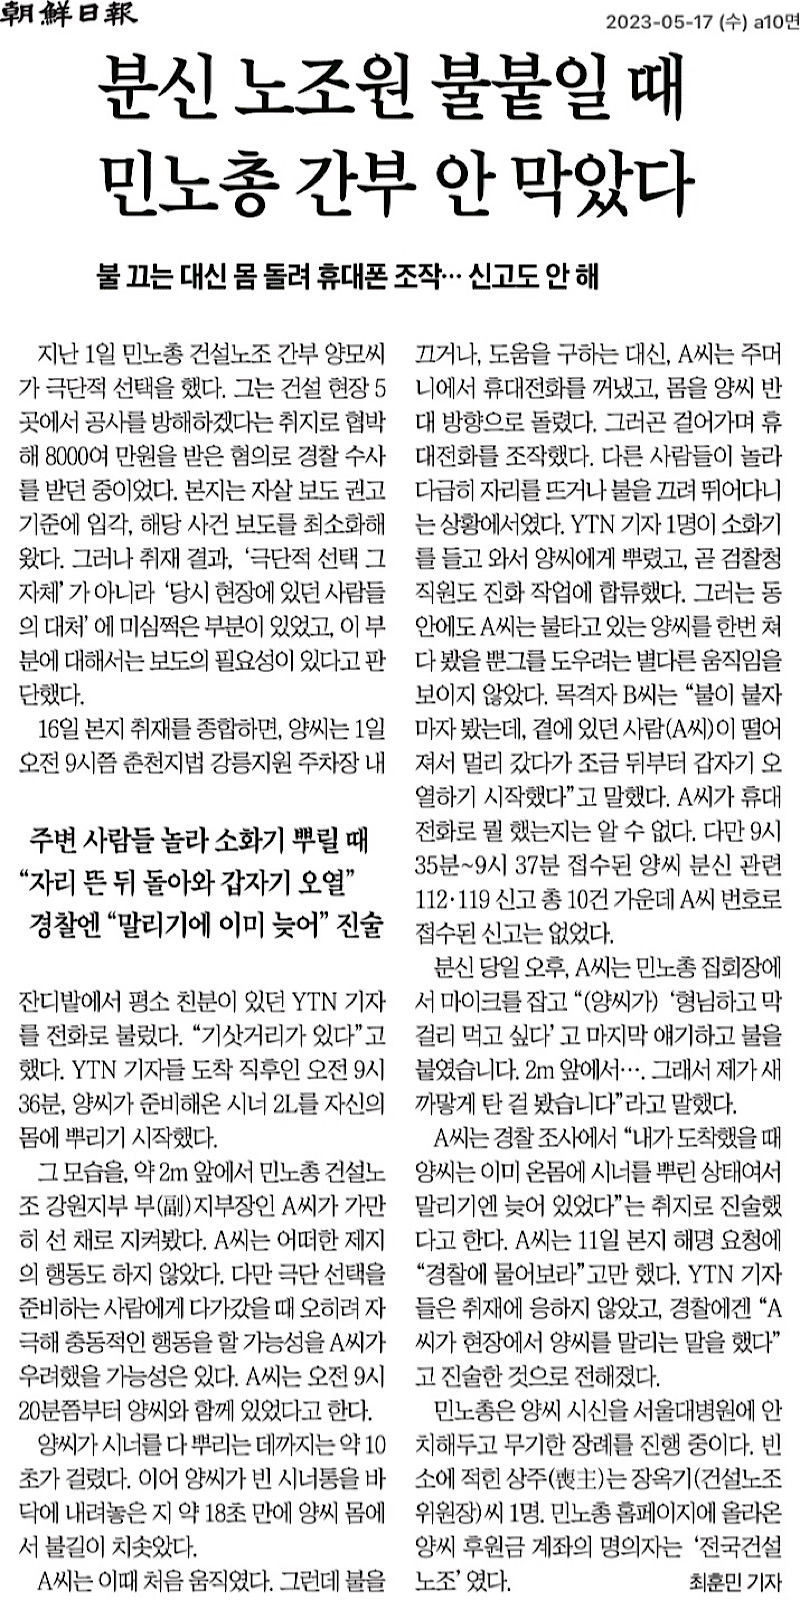 ▲2023년 5월 17일 조선일보 신문 기사. 기사 하단의 분신 장면 CCTV 영상은 2차 피해 방지를 위해 삭제 처리.